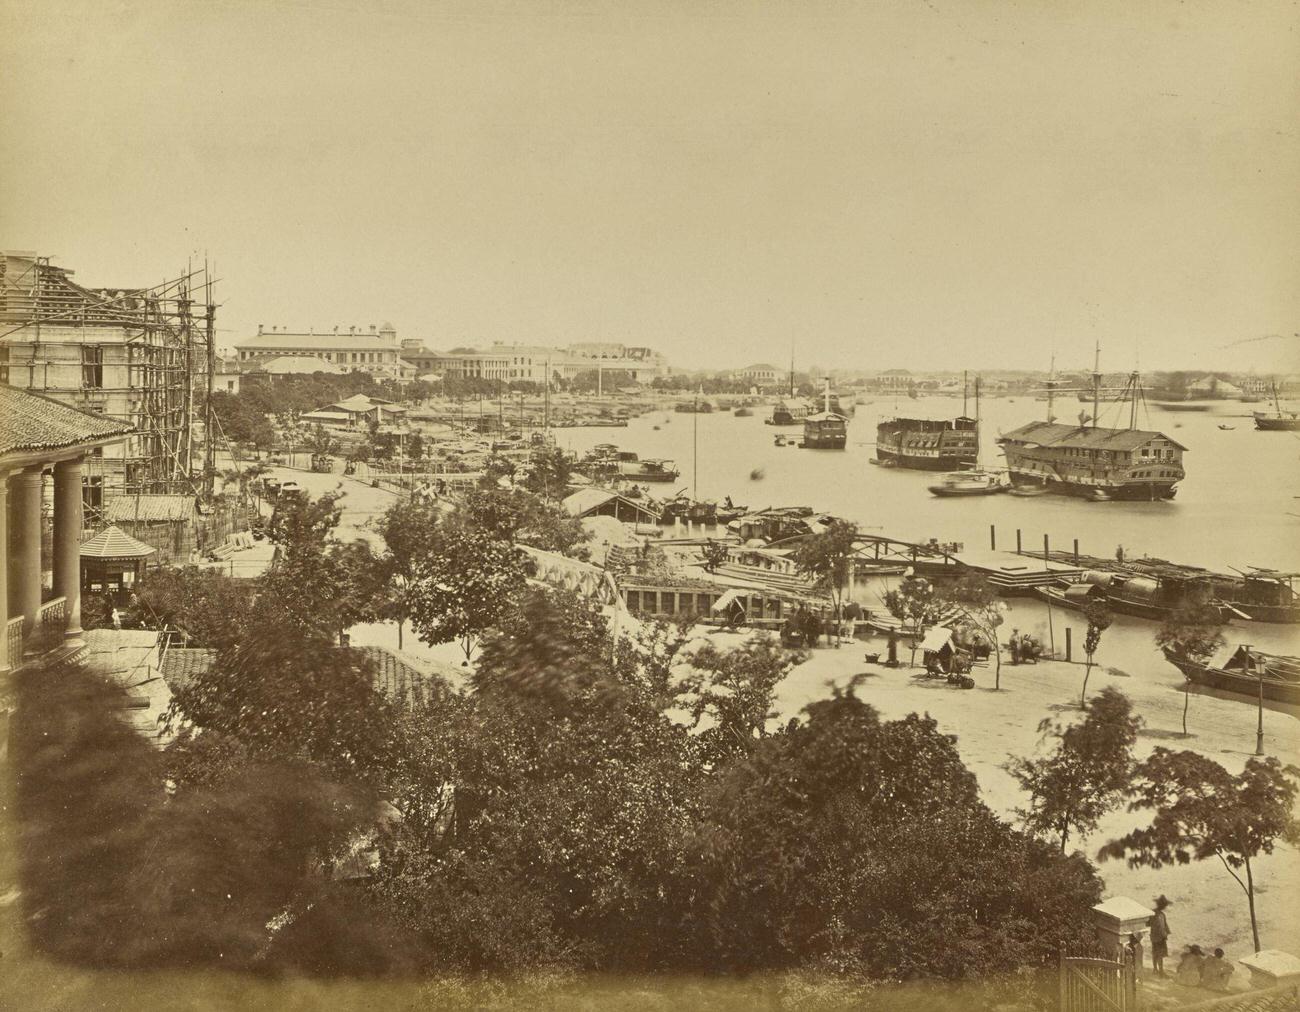 General View of Bund, Shanghai, 1870